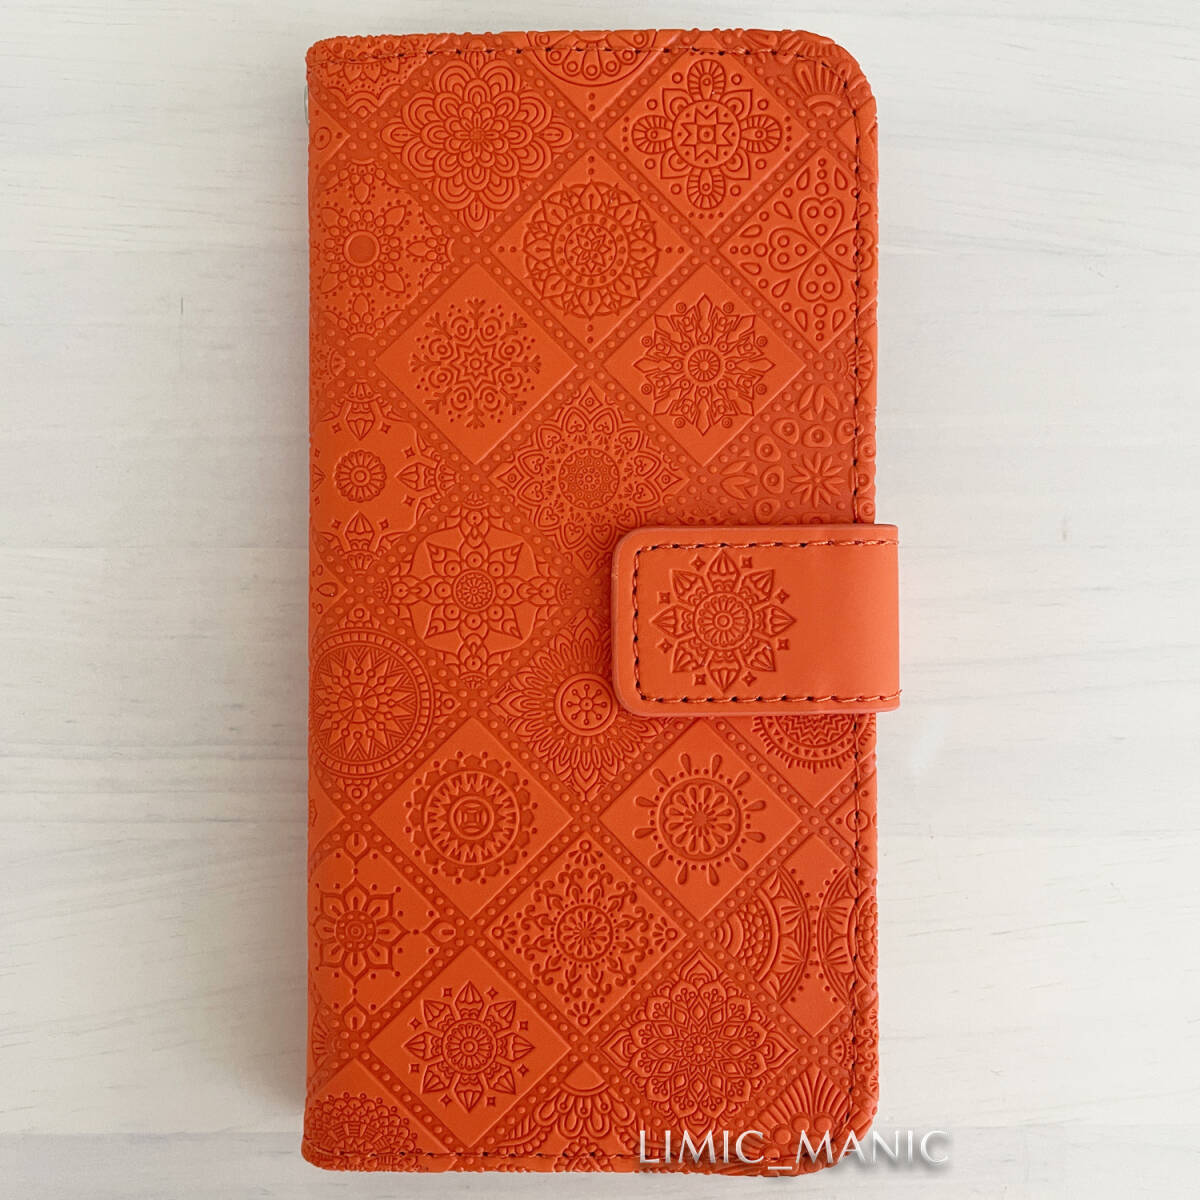 iPhone 7 8 SE (第2世代/第3世代) SE2 SE3 ケース スマホ 手帳型 カードケース オレンジ 橙 エスニック風 曼荼羅模様 アイフォン